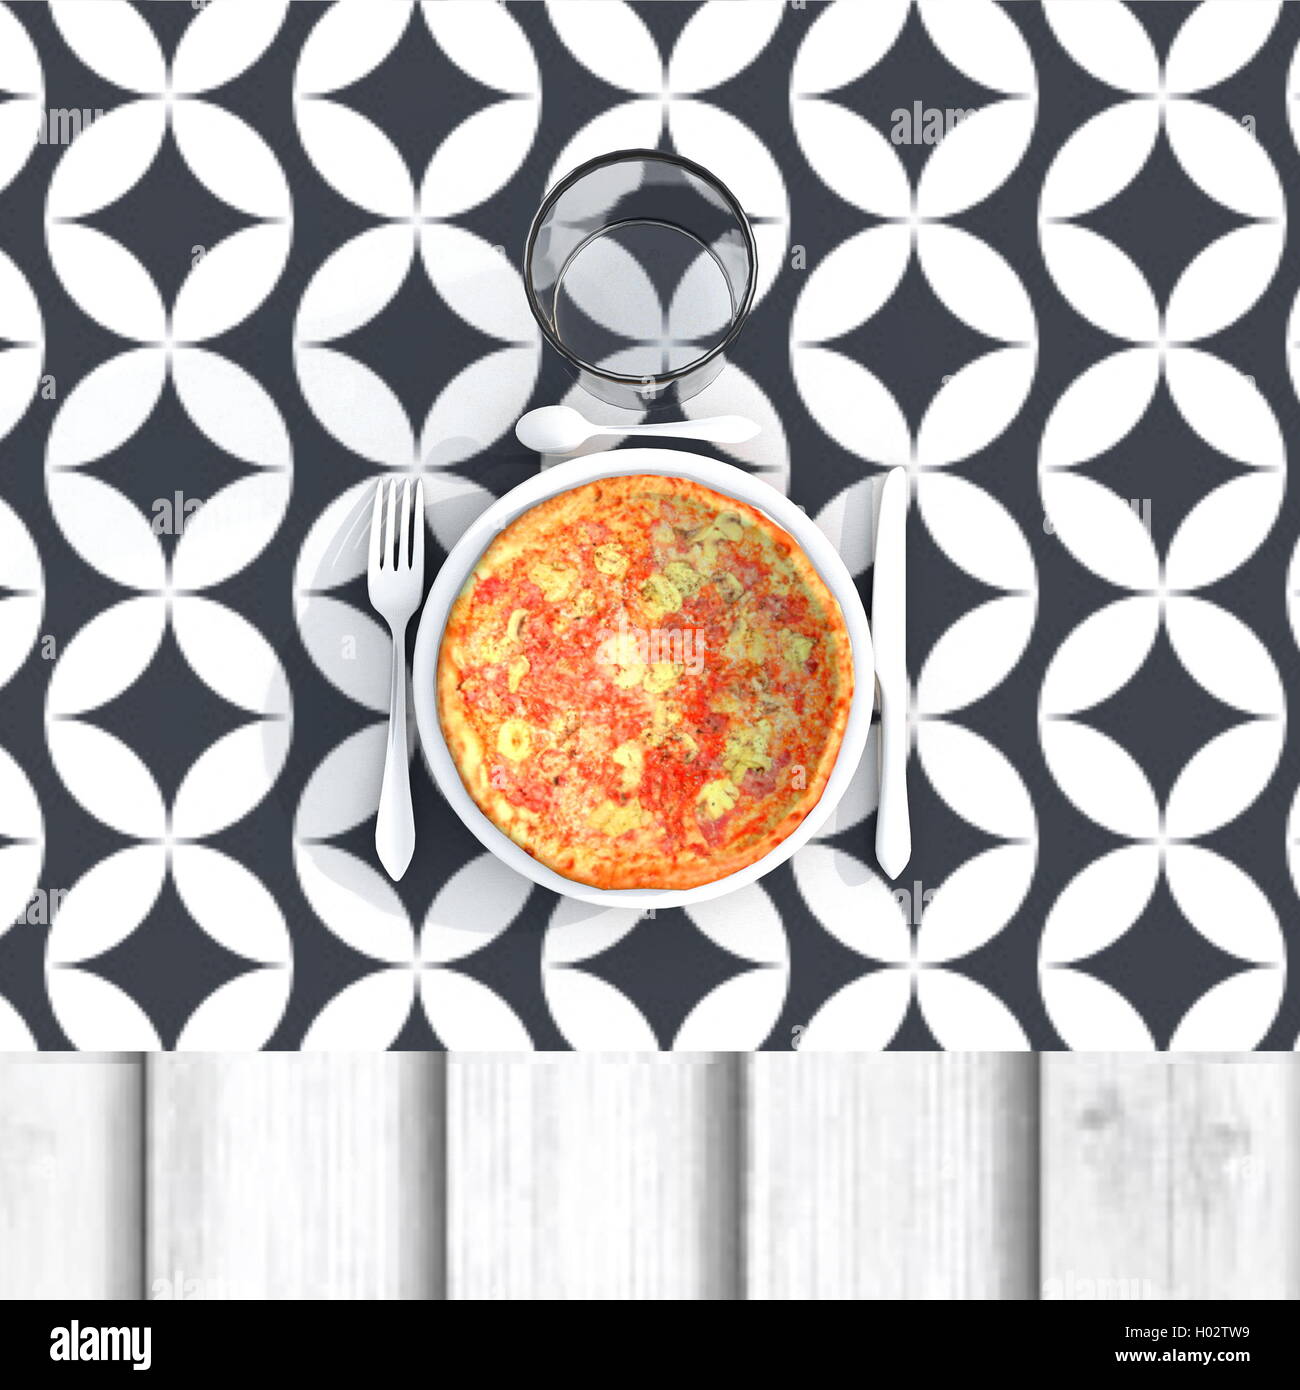 Illustration 3d rendering de pizza italienne avec couverts et verre Banque D'Images